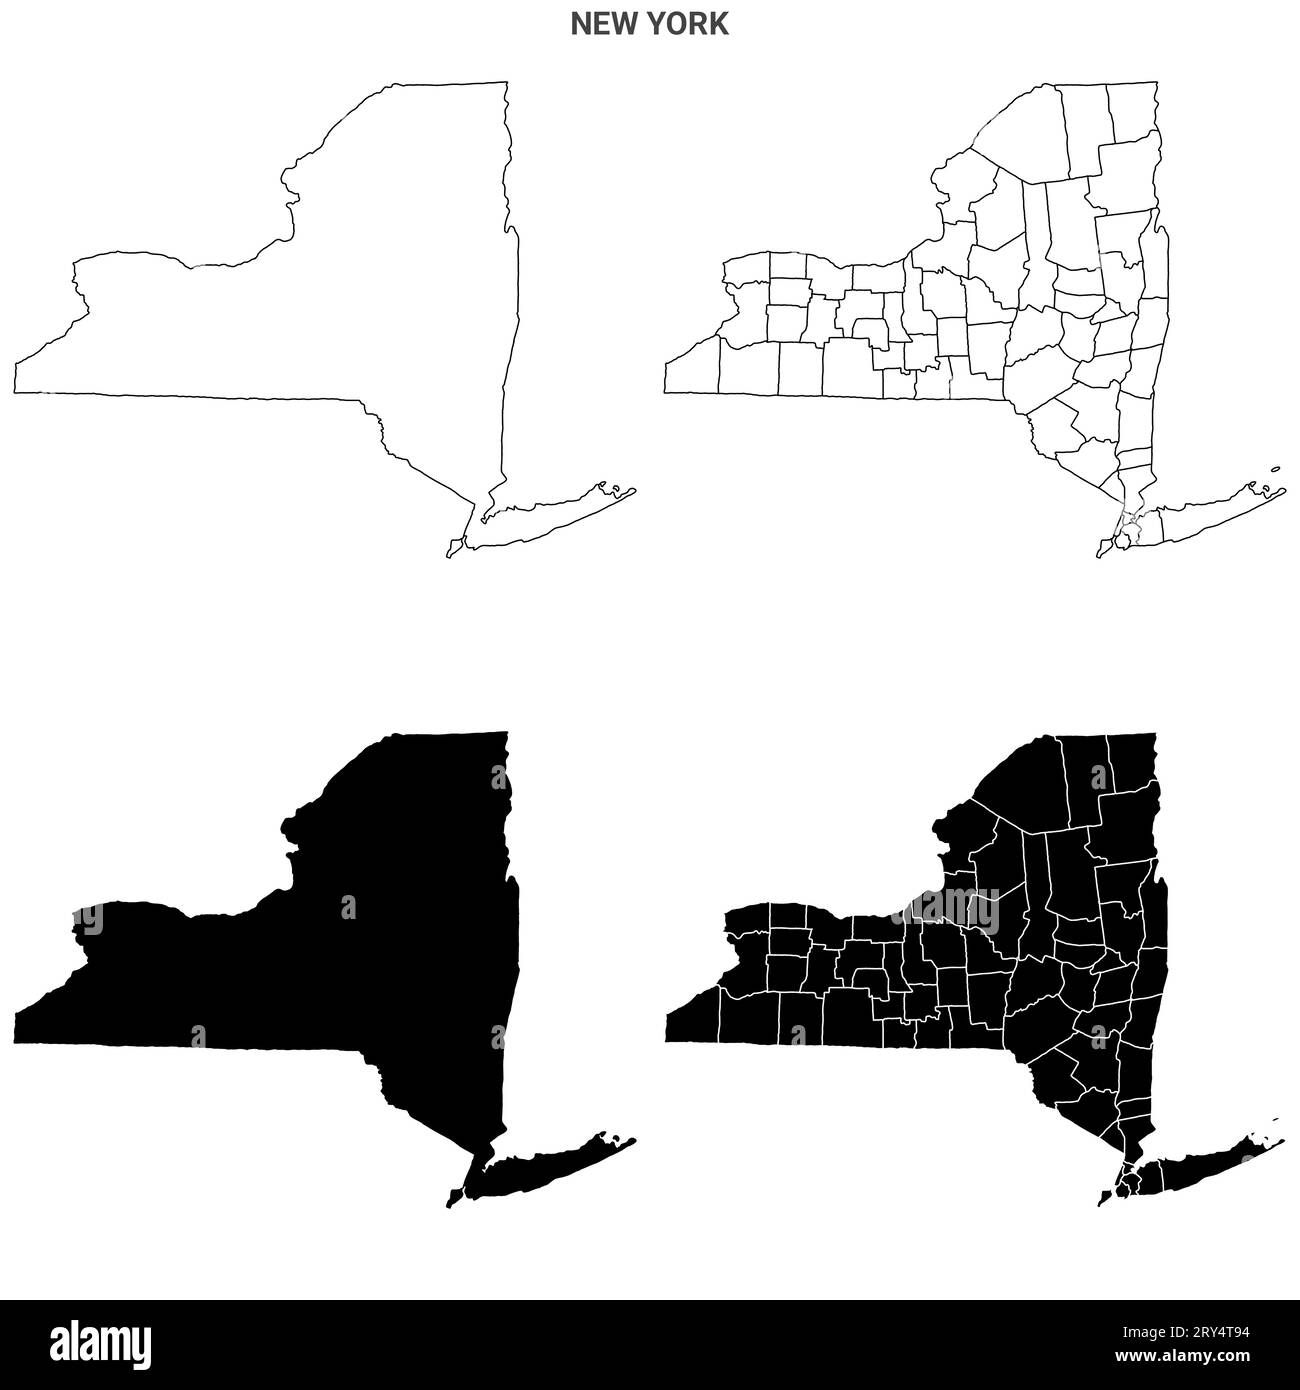 Mappa dello stato di New York, USA. Mappe dettagliate e multiple della mappa di New York, mappa vuota. Foto Stock